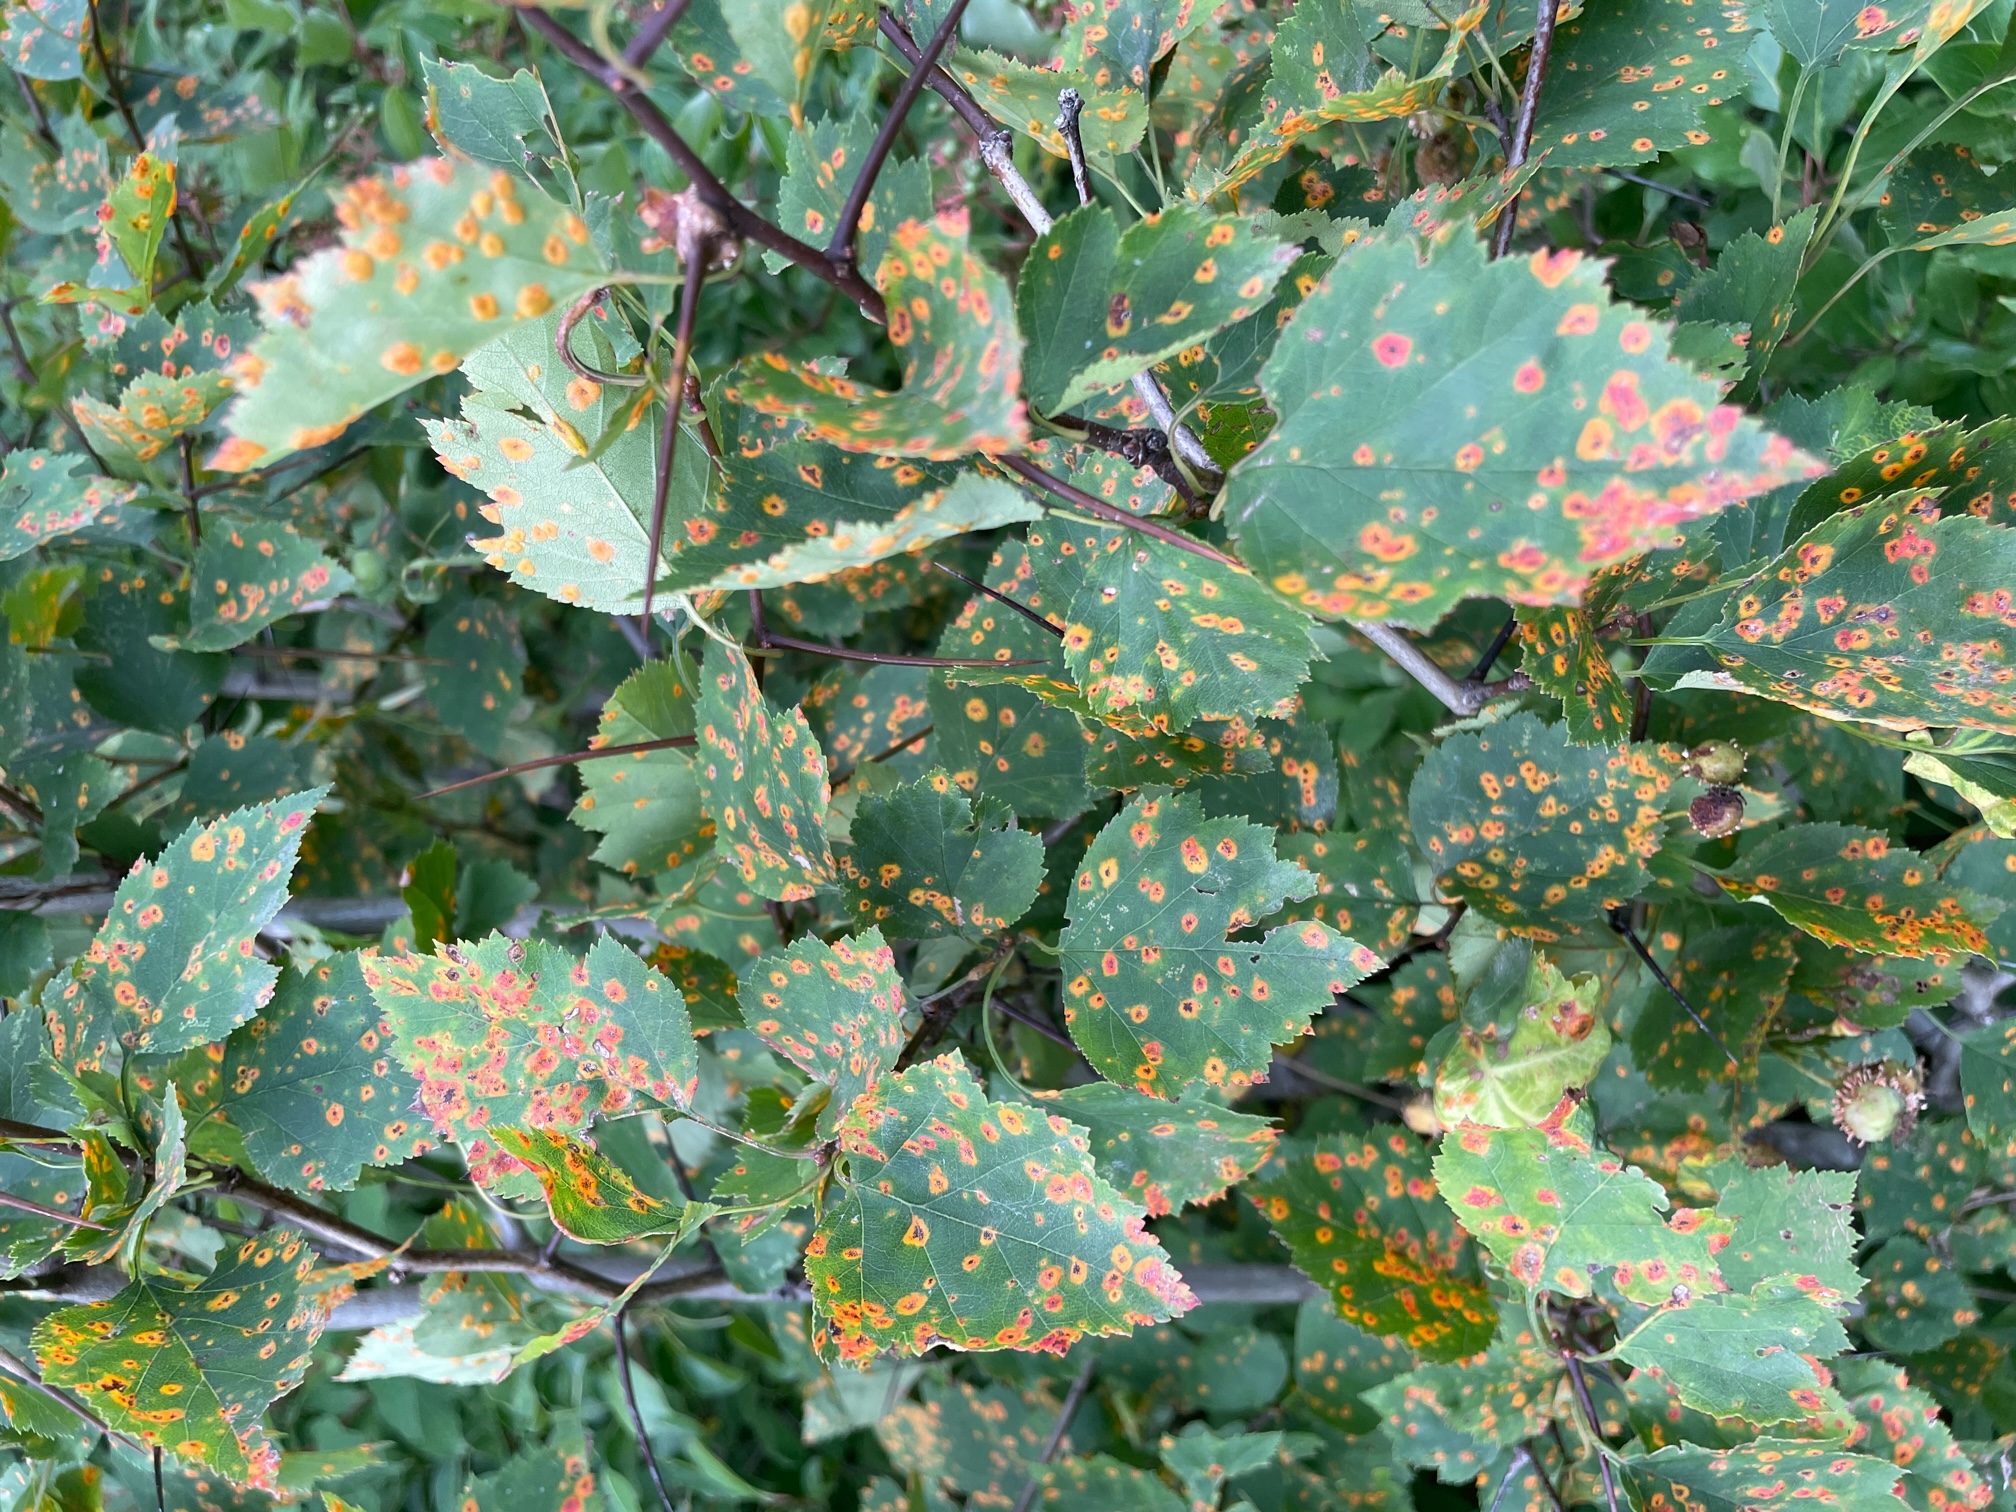 Hawthorn rust on apple leaves.